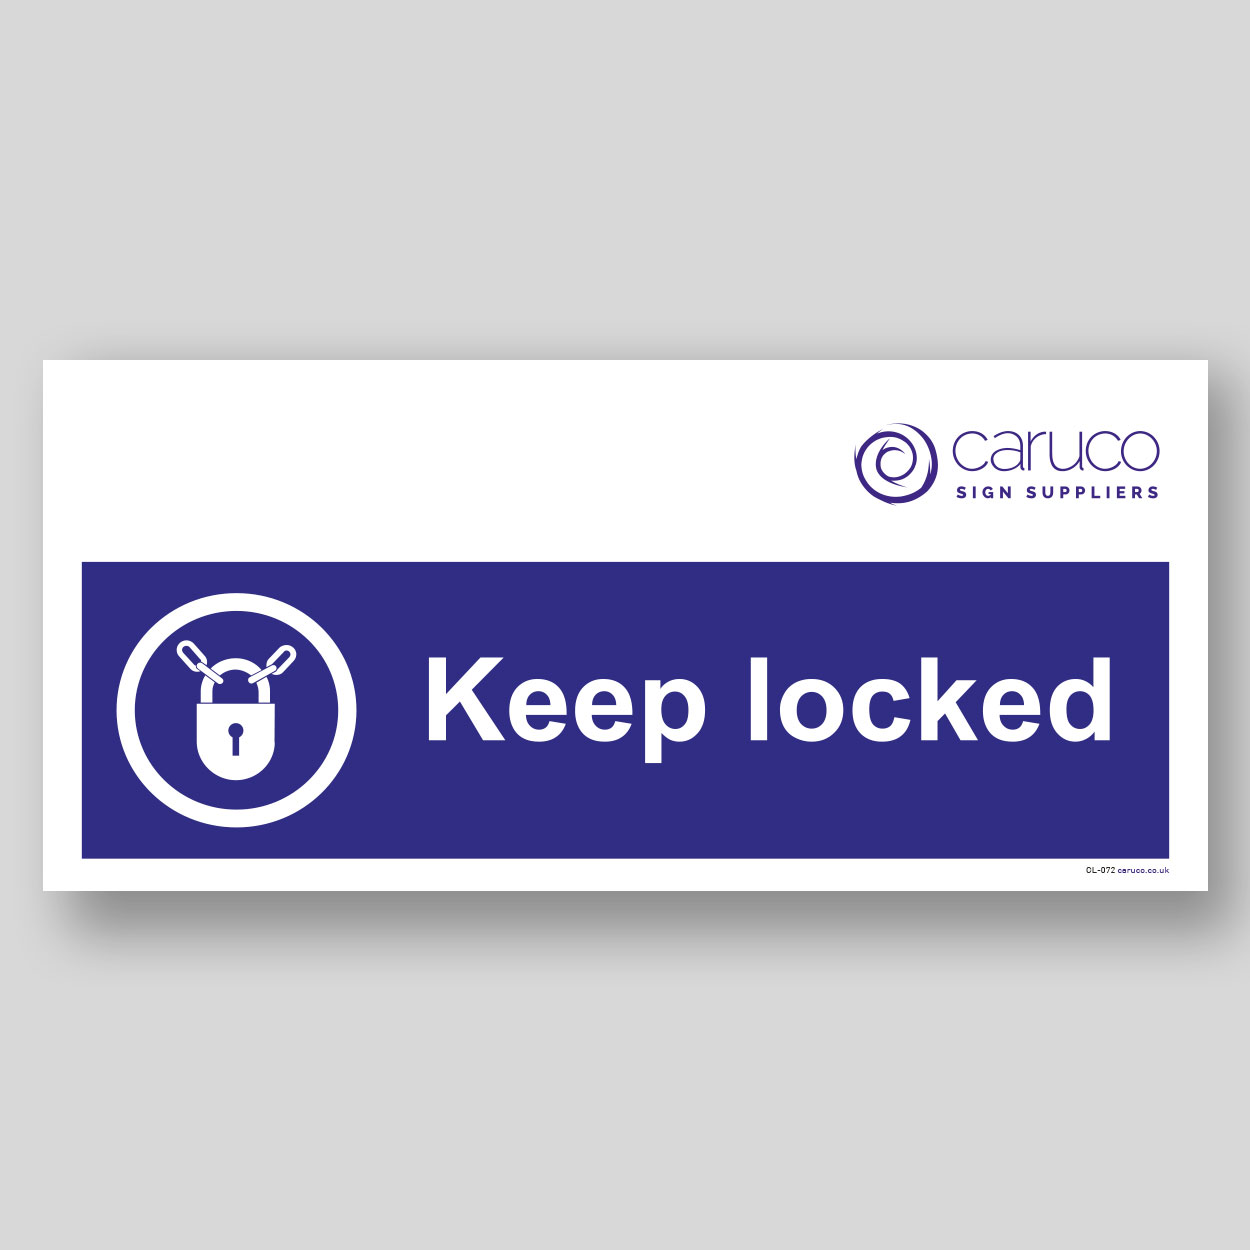 CL-072 Keep locked